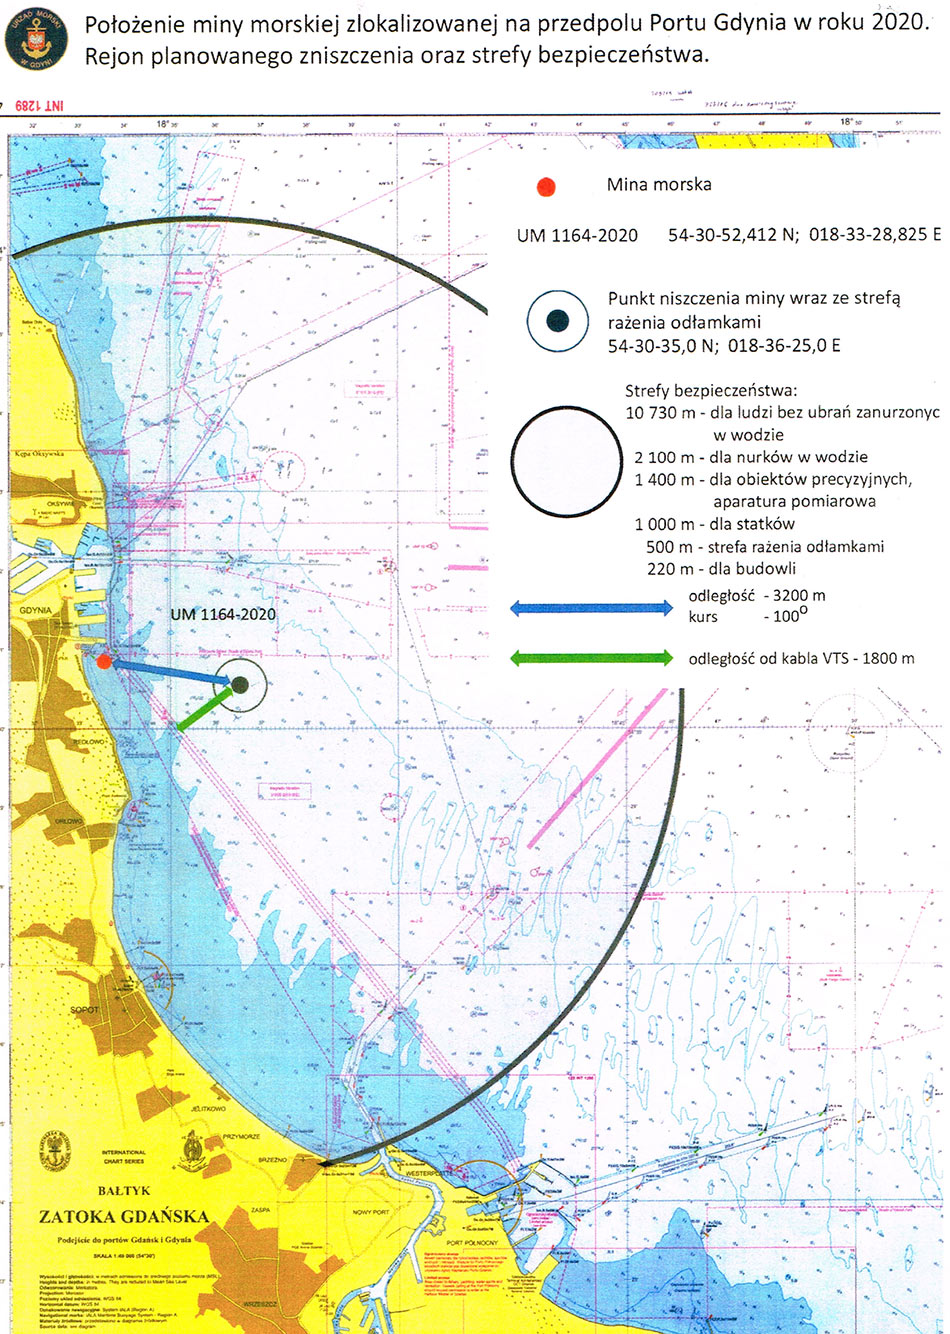 Rejnon planowanego zniszczenia oraz strefy bezpieczenstwa Mina morska w rejonie południowego wejścia do gdyńskiego portu